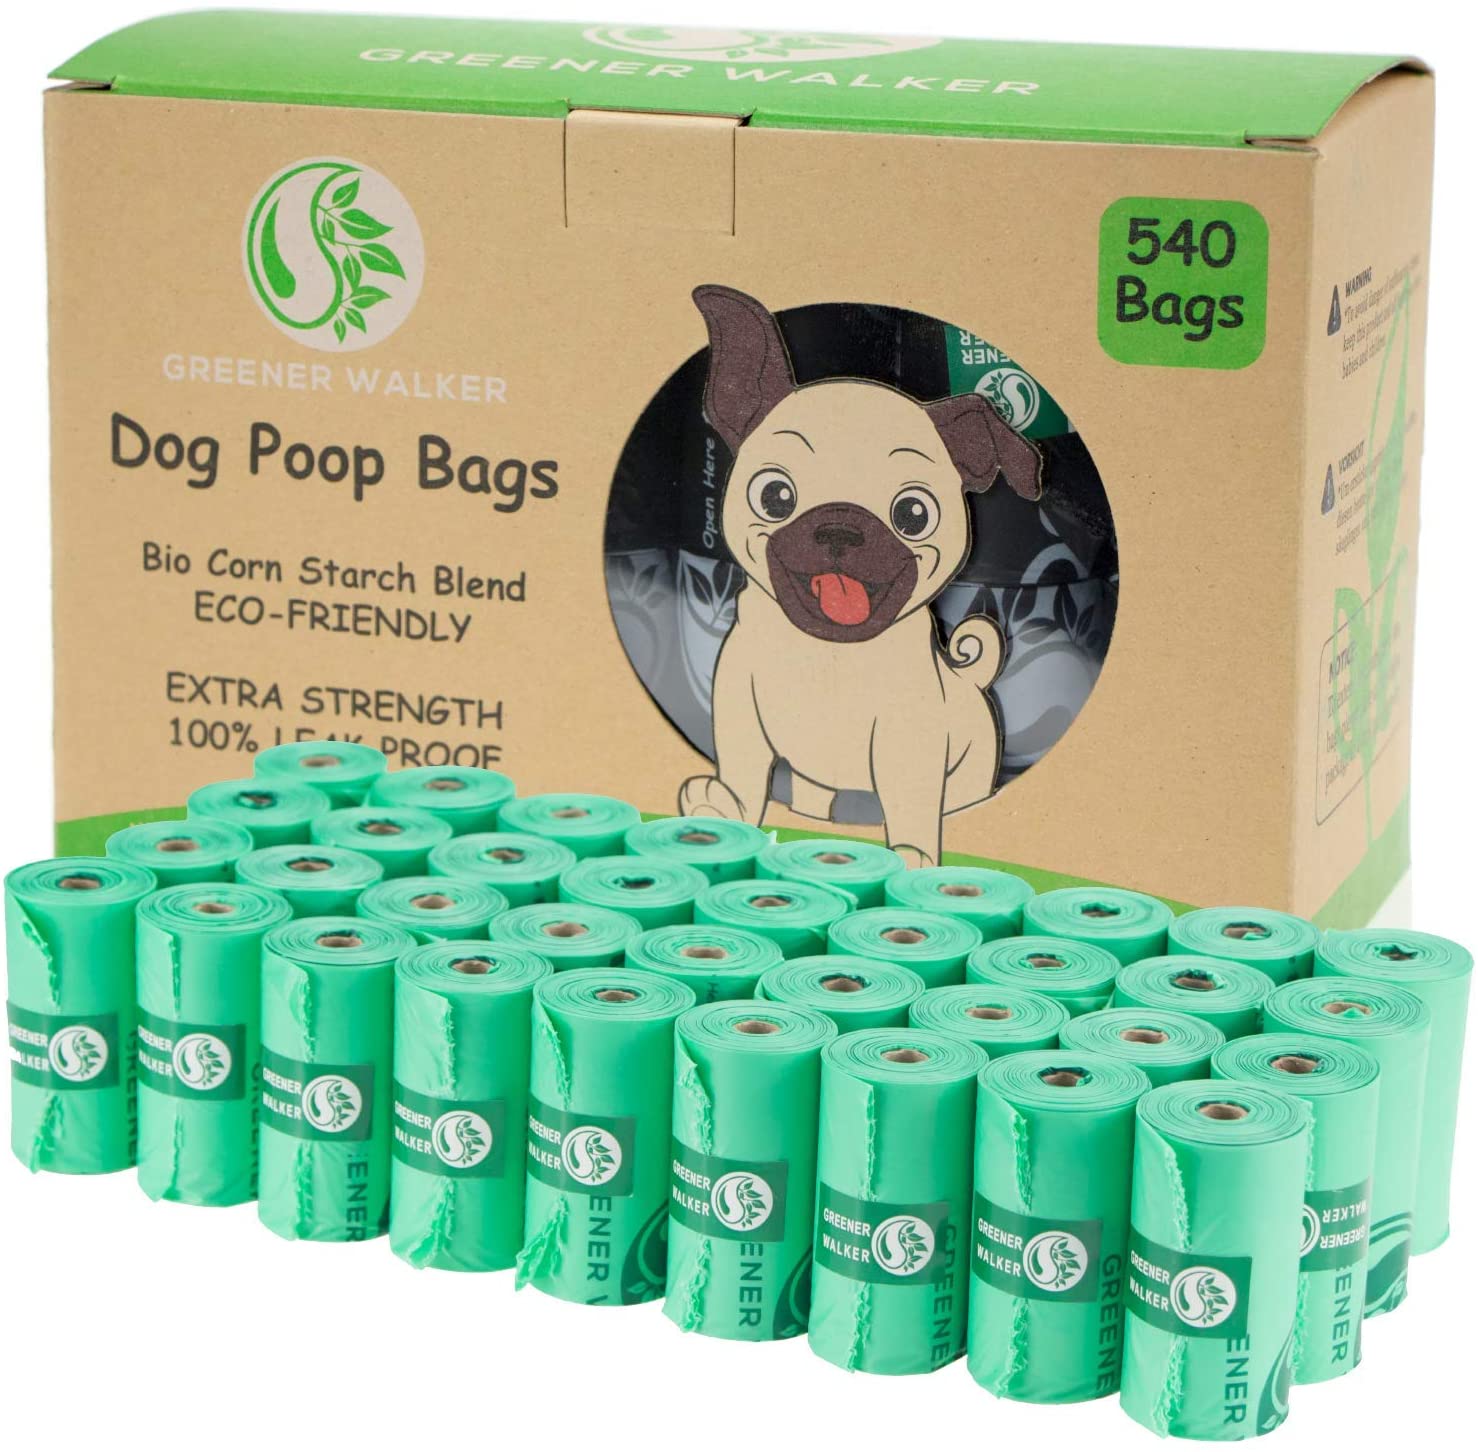  Greener Walker Bolsas para Excrementos de Perro,540 Unidades,Extra Grueso,Fuerte y 100% a Prueba de Fugas Biodegradable Bolsas para Caca de Perro(Verde) 